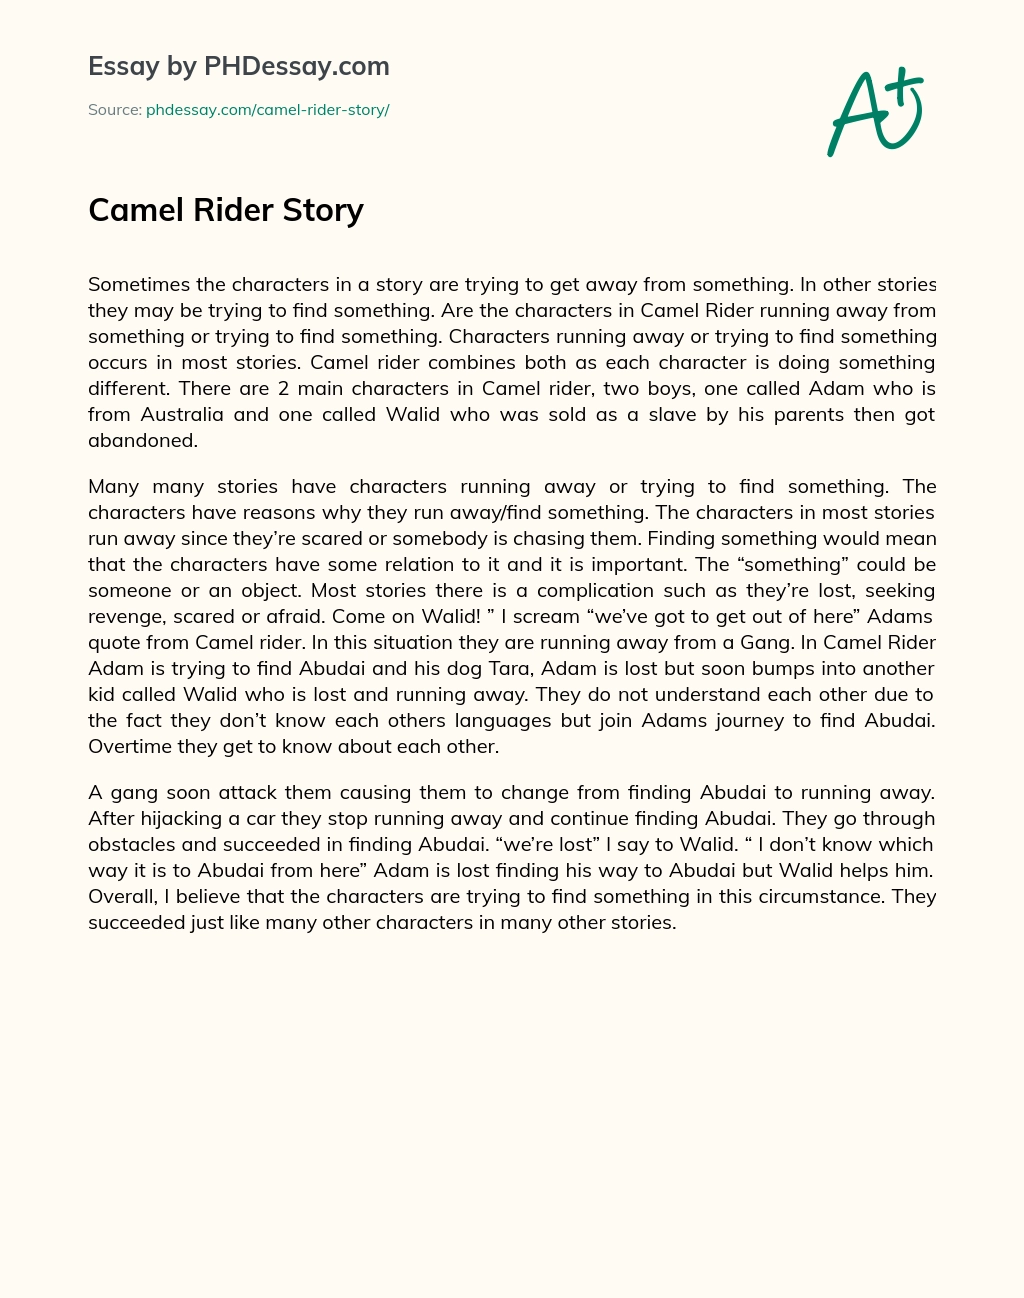 Camel Rider Story essay